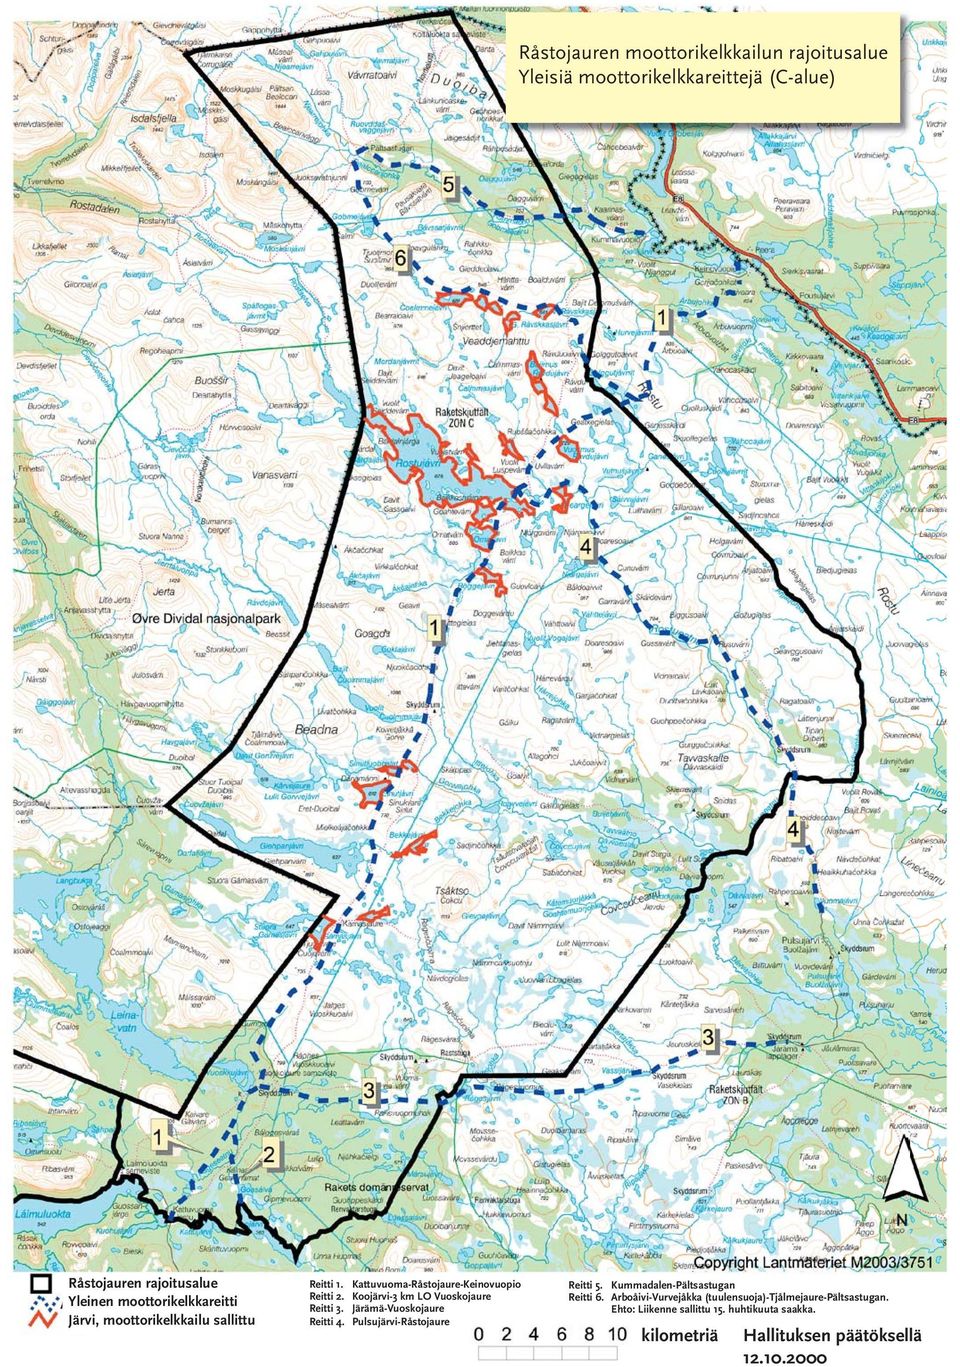 Koojärvi-3 km LO Vuoskojaure Reitti 3. Järämä-Vuoskojaure Reitti 4. Pulsujärvi-Råstojaure Reitti 5.